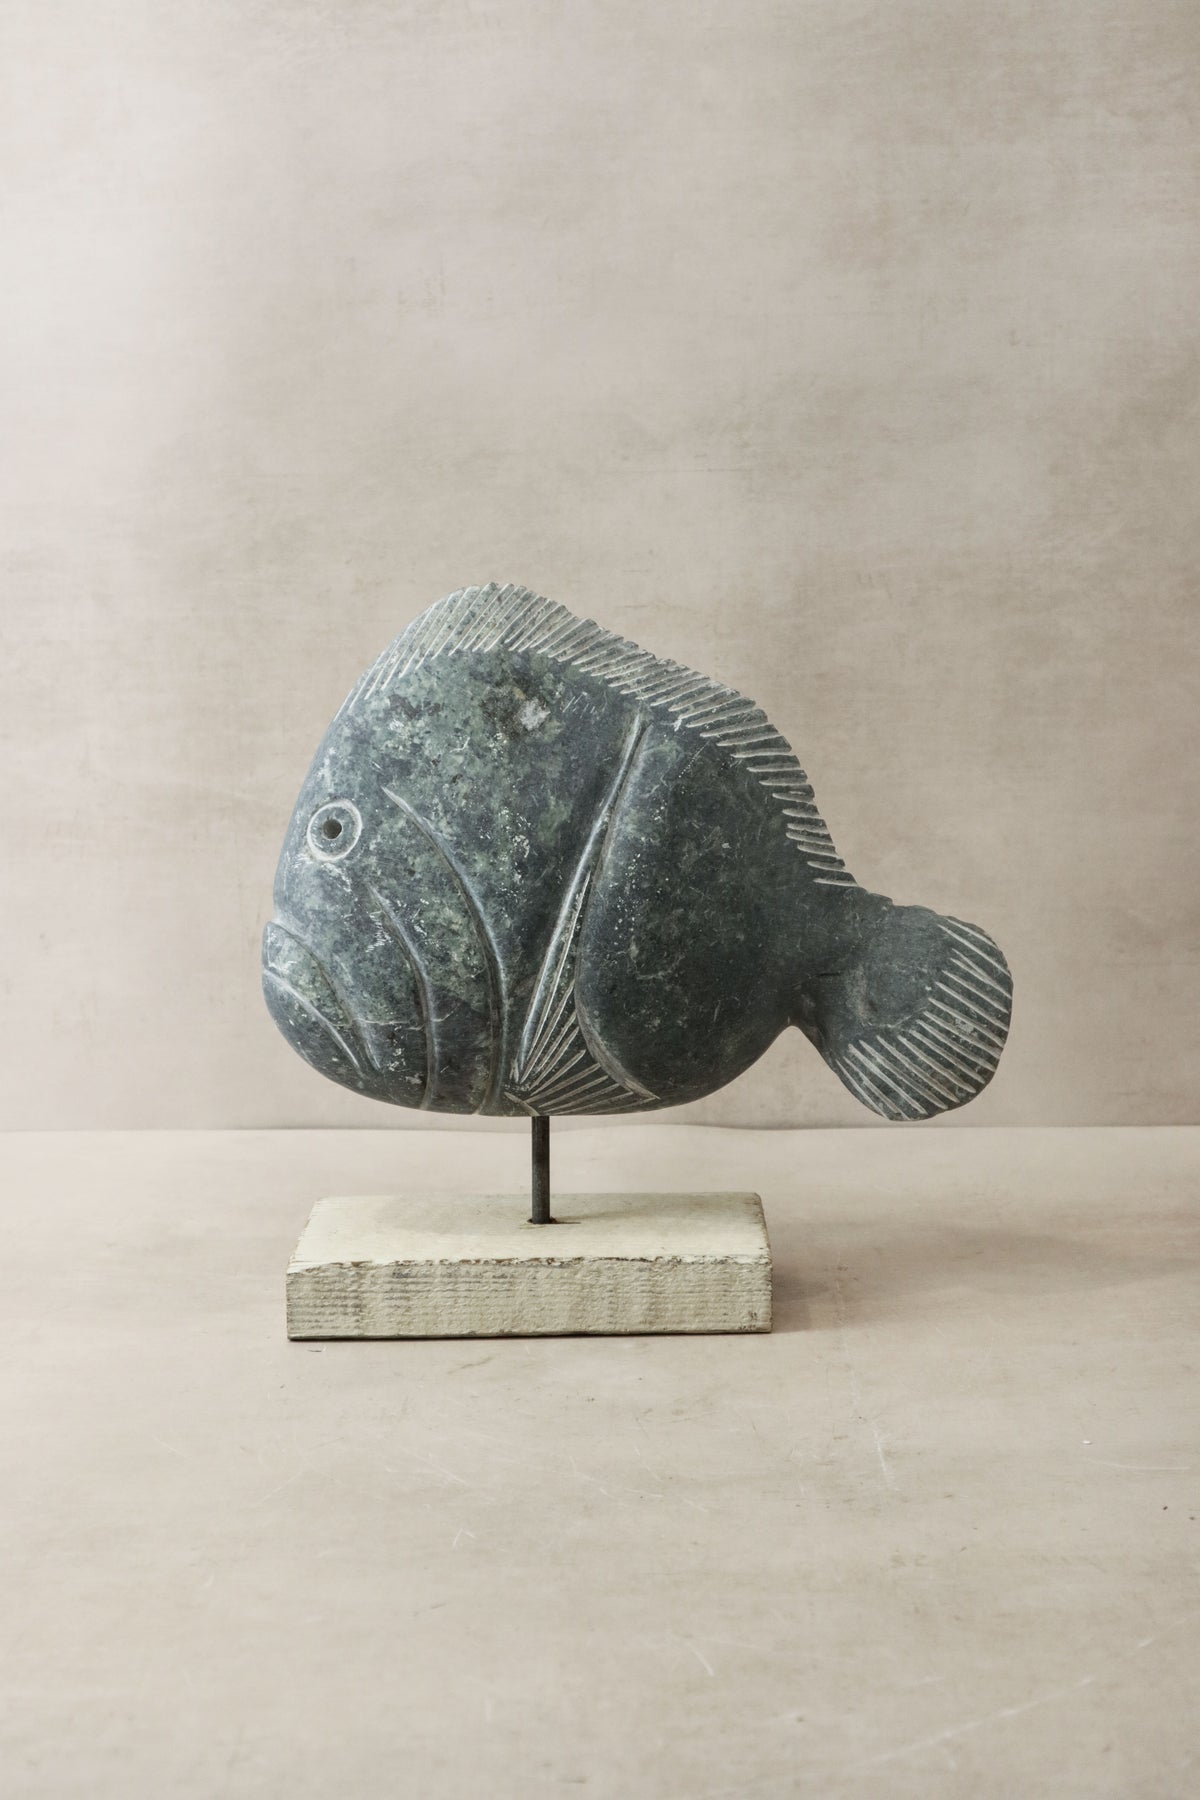 Stone Fish Sculpture - Zimbabwe - 35.1